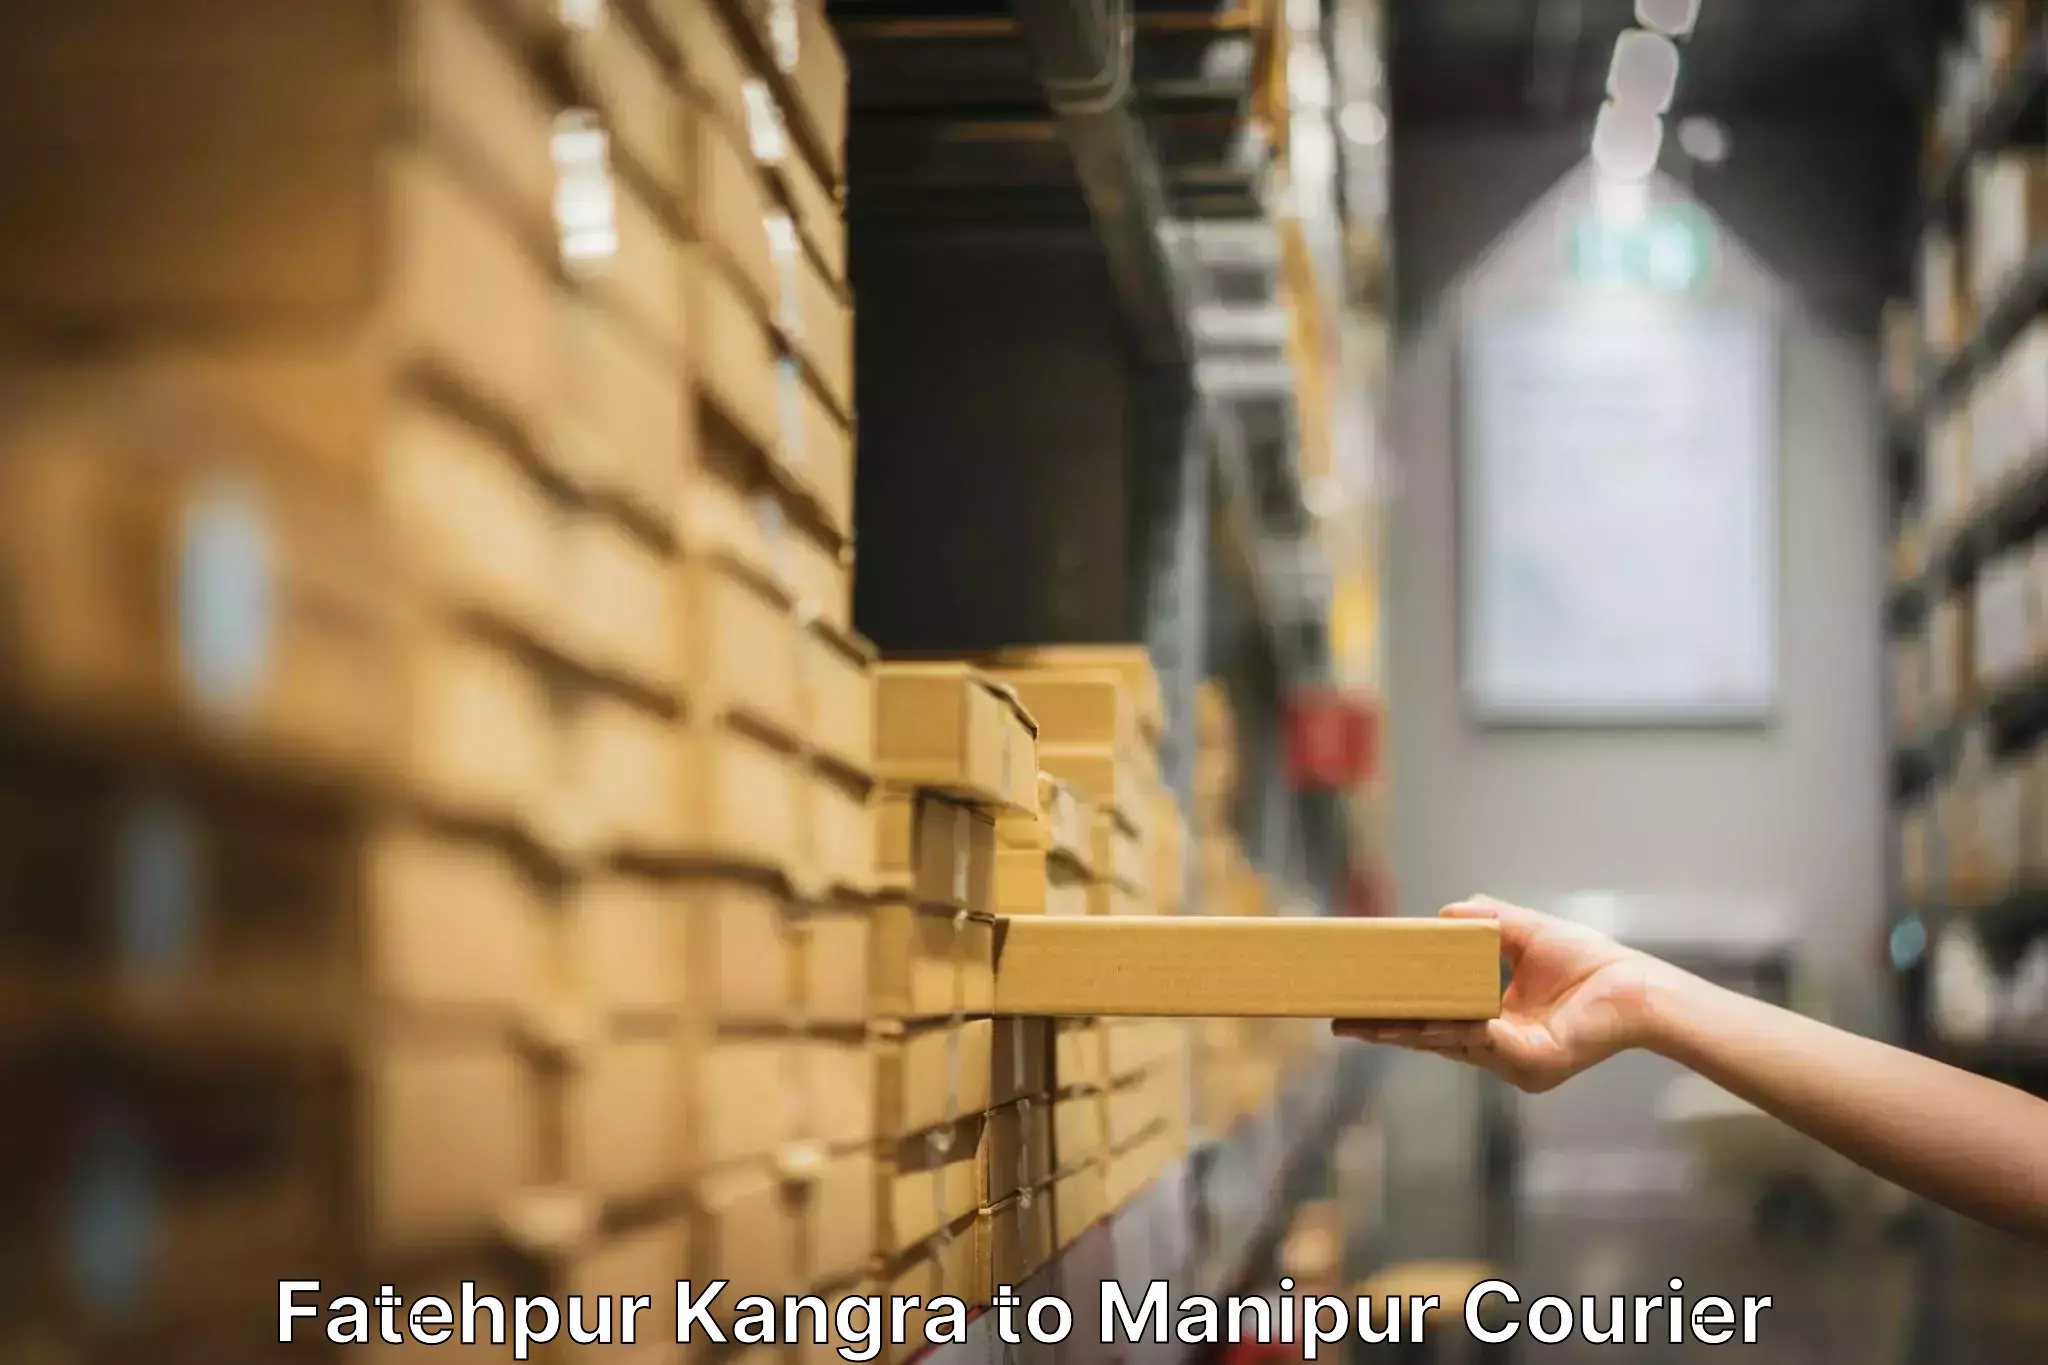 Furniture moving experts Fatehpur Kangra to Kaptipada